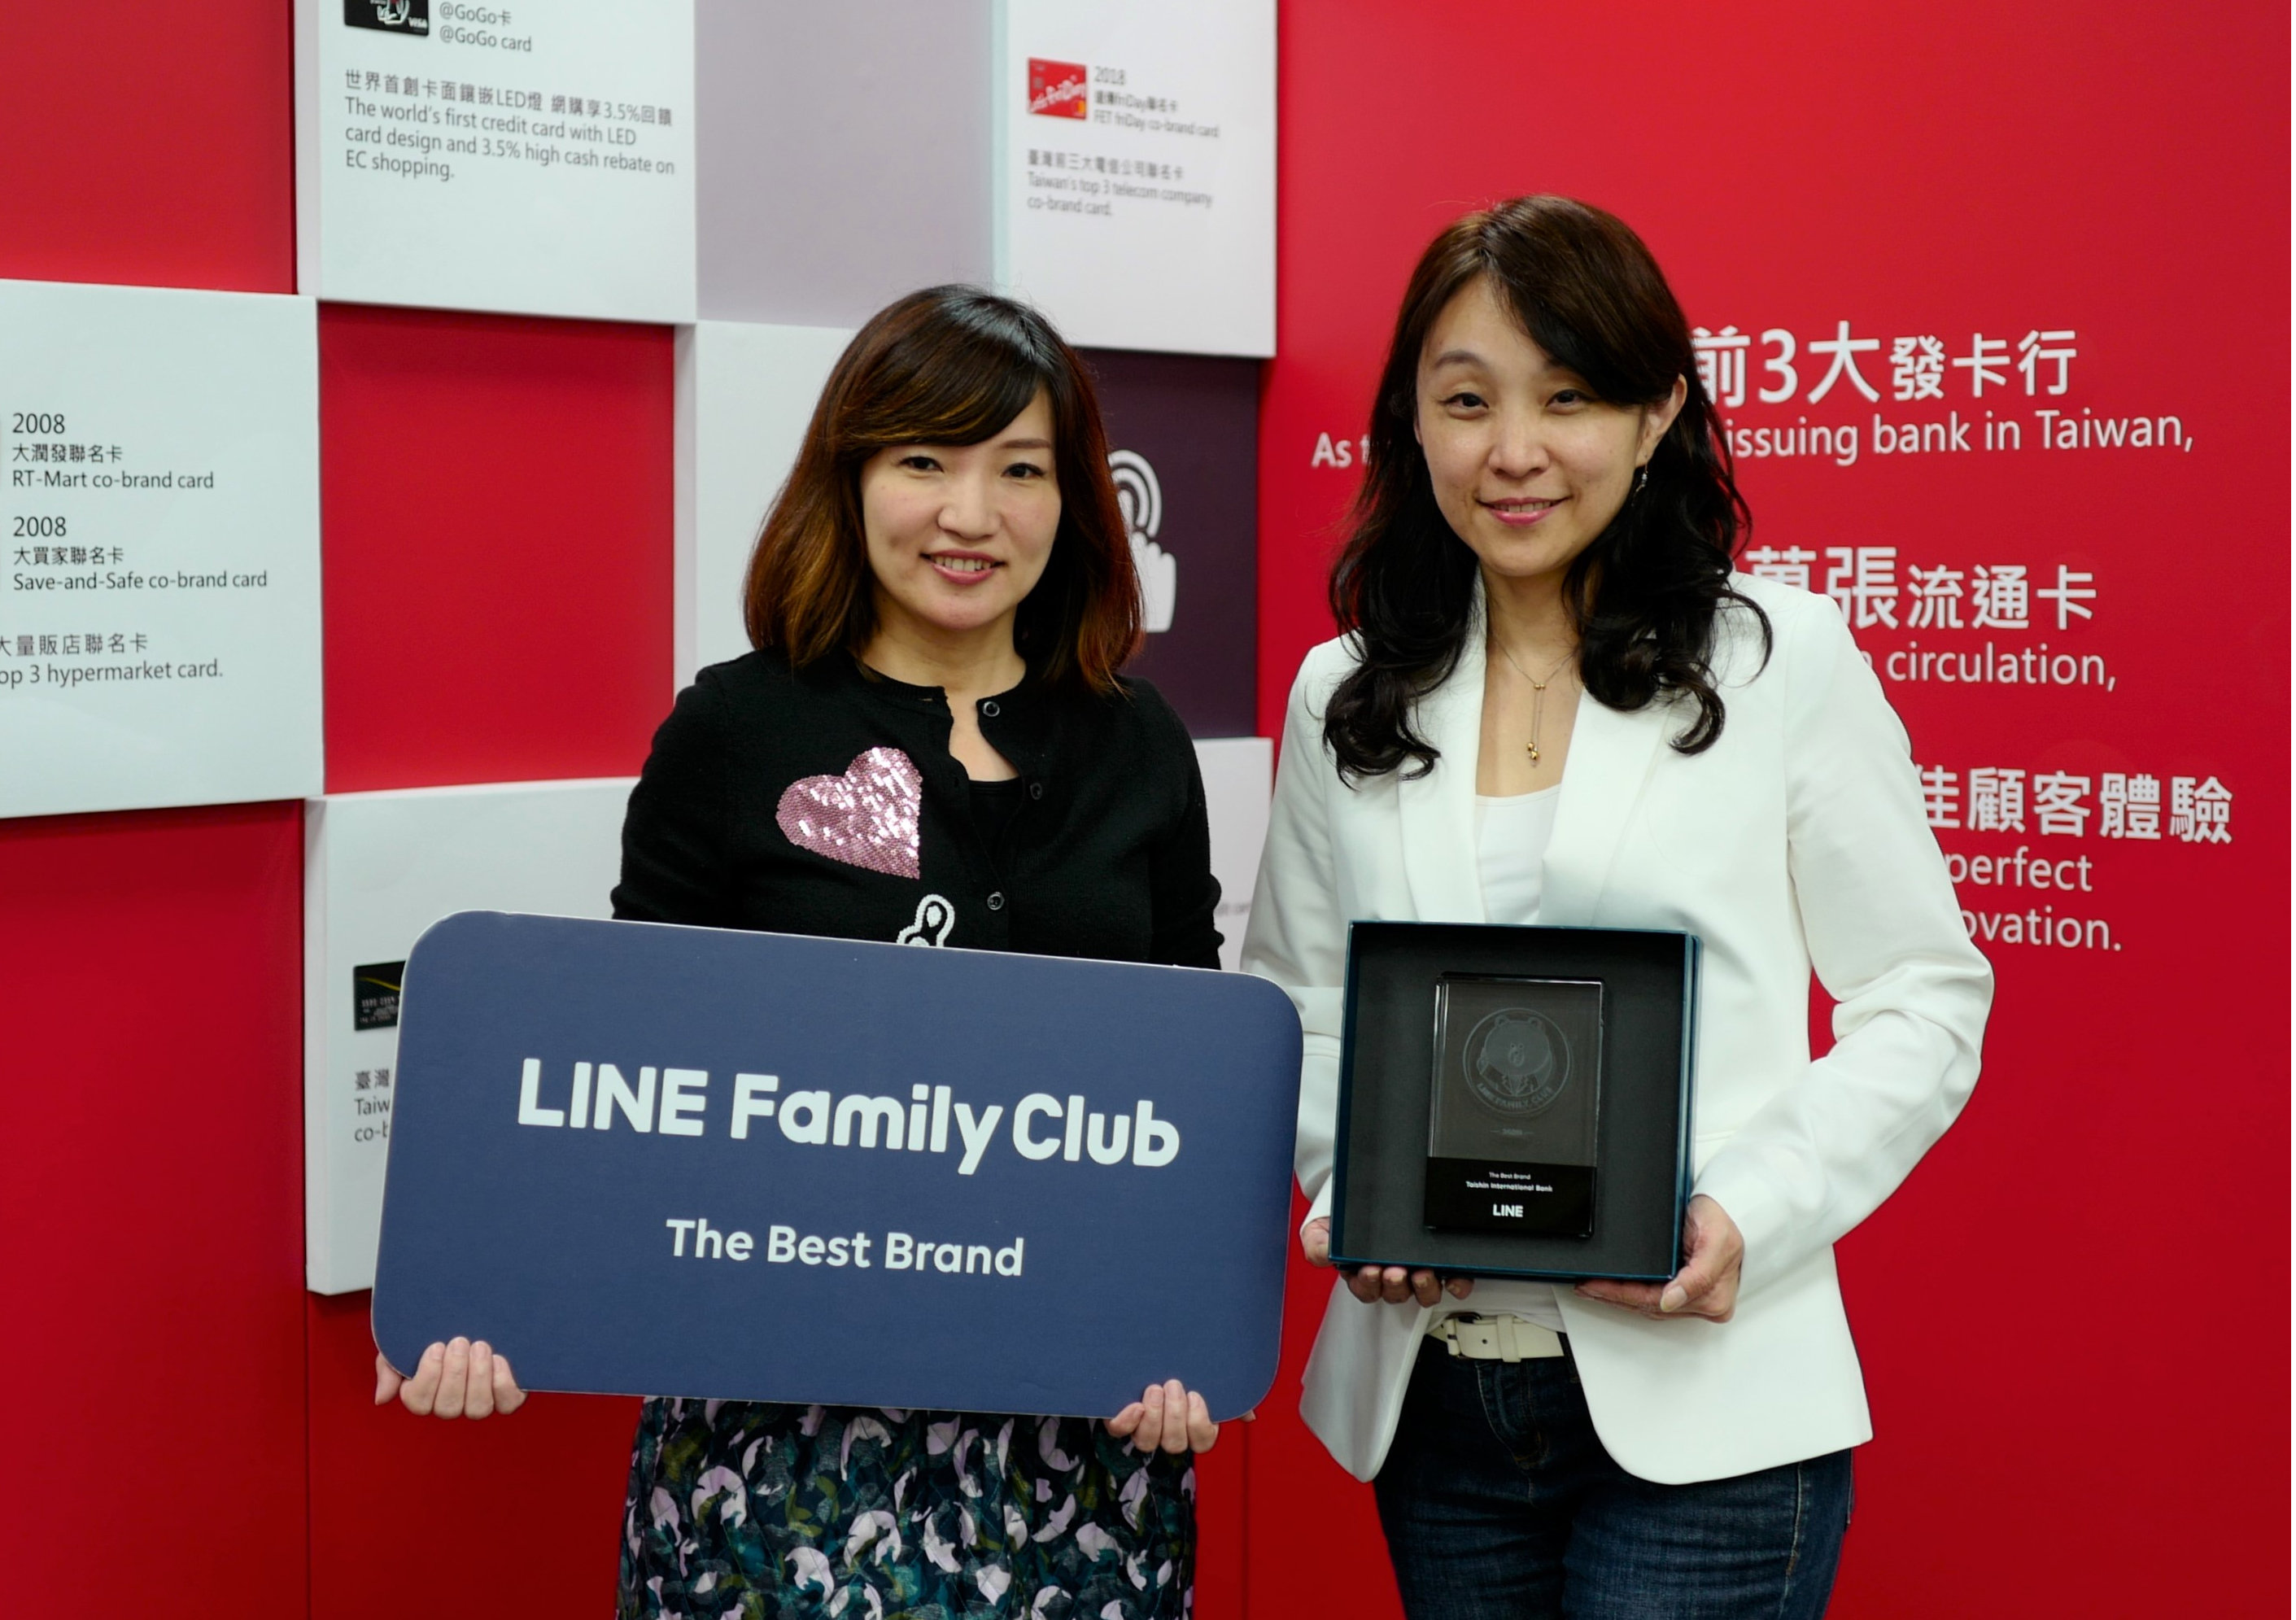 20200519_台新銀 創新洞察需求 獲「LINE Family Club - The Best Brand」殊榮_新聞圖片-1